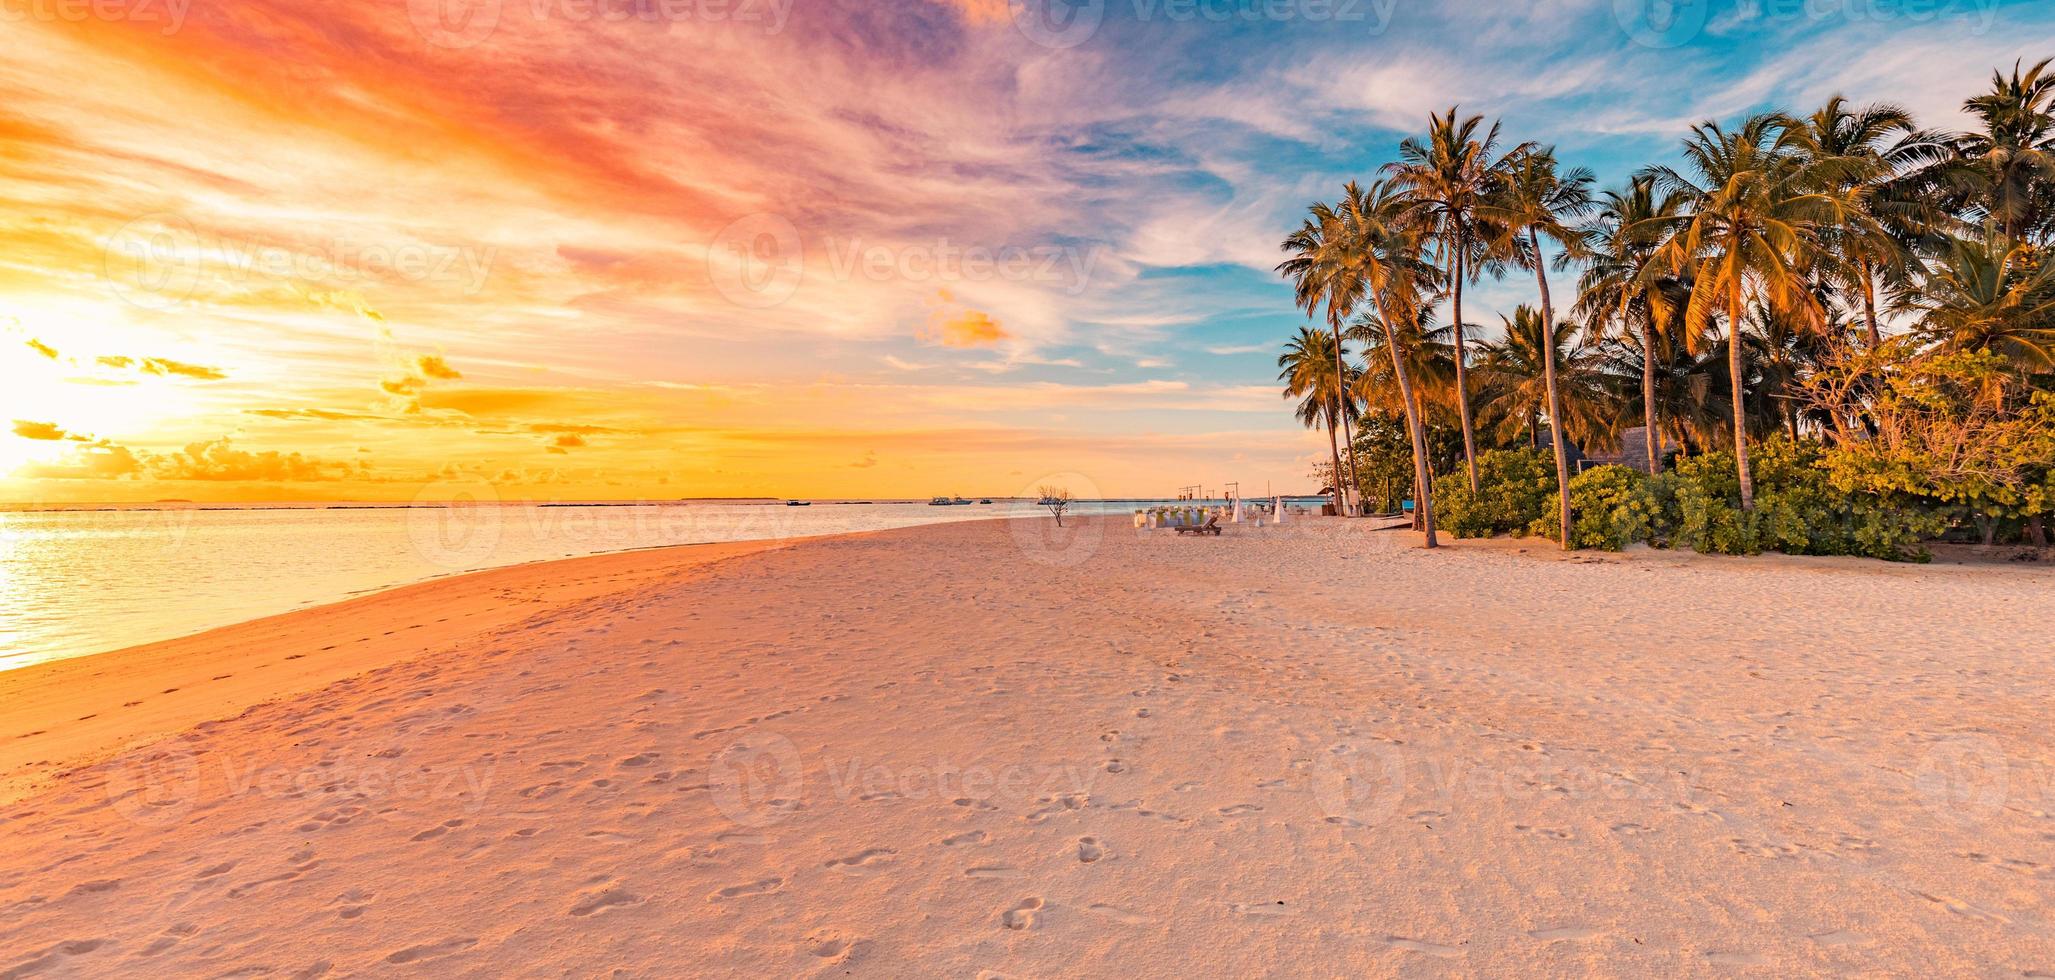 lugn sommar semester semester landskap. tropisk ö solnedgång strand. palmer strand lugn havssand. exotisk natur naturskön, inspirerande och fridfull havsbildsreflektion, fantastisk himmelsolnedgång foto